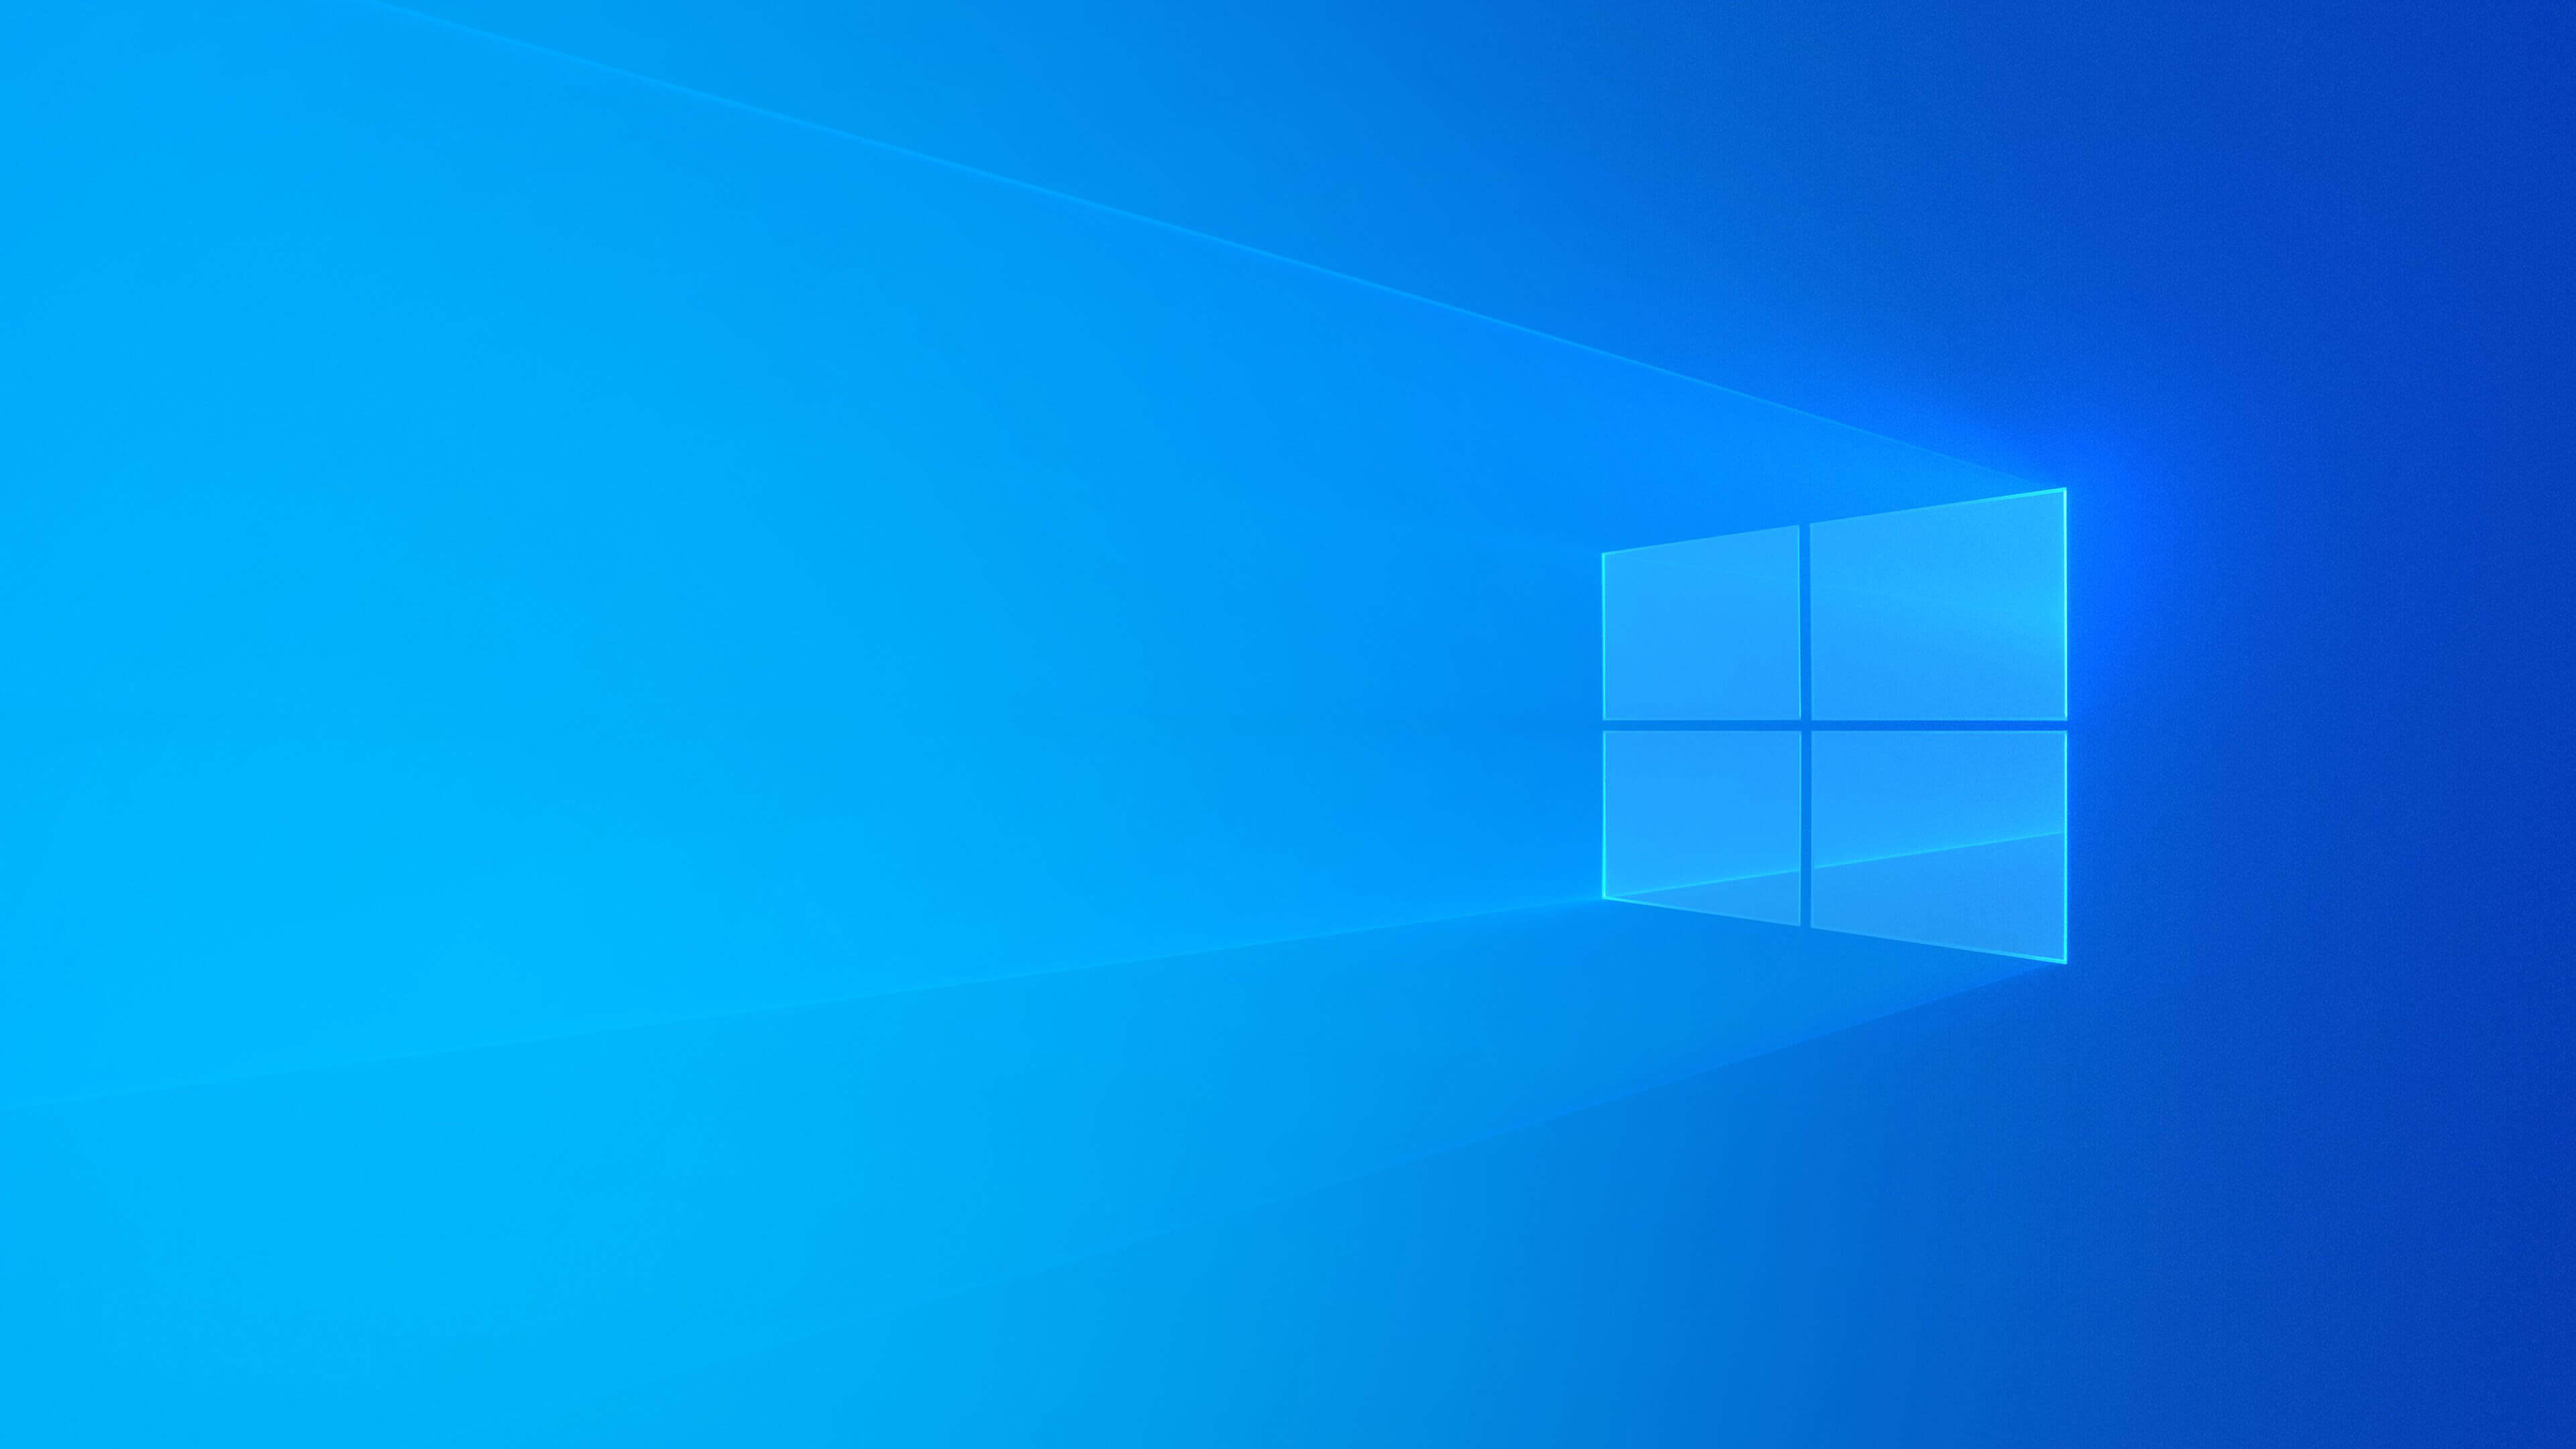 Hình nền Windows 10: Điều gì khiến chiếc máy tính của bạn trở nên hấp dẫn hơn khi khởi động? Hình nền Windows 10 mới nhất sẽ mang đến cho bạn sự tươi mới và sáng tạo, đồng thời tạo ra một không gian làm việc thú vị để bạn có thể dễ dàng tương tác với máy tính của mình.